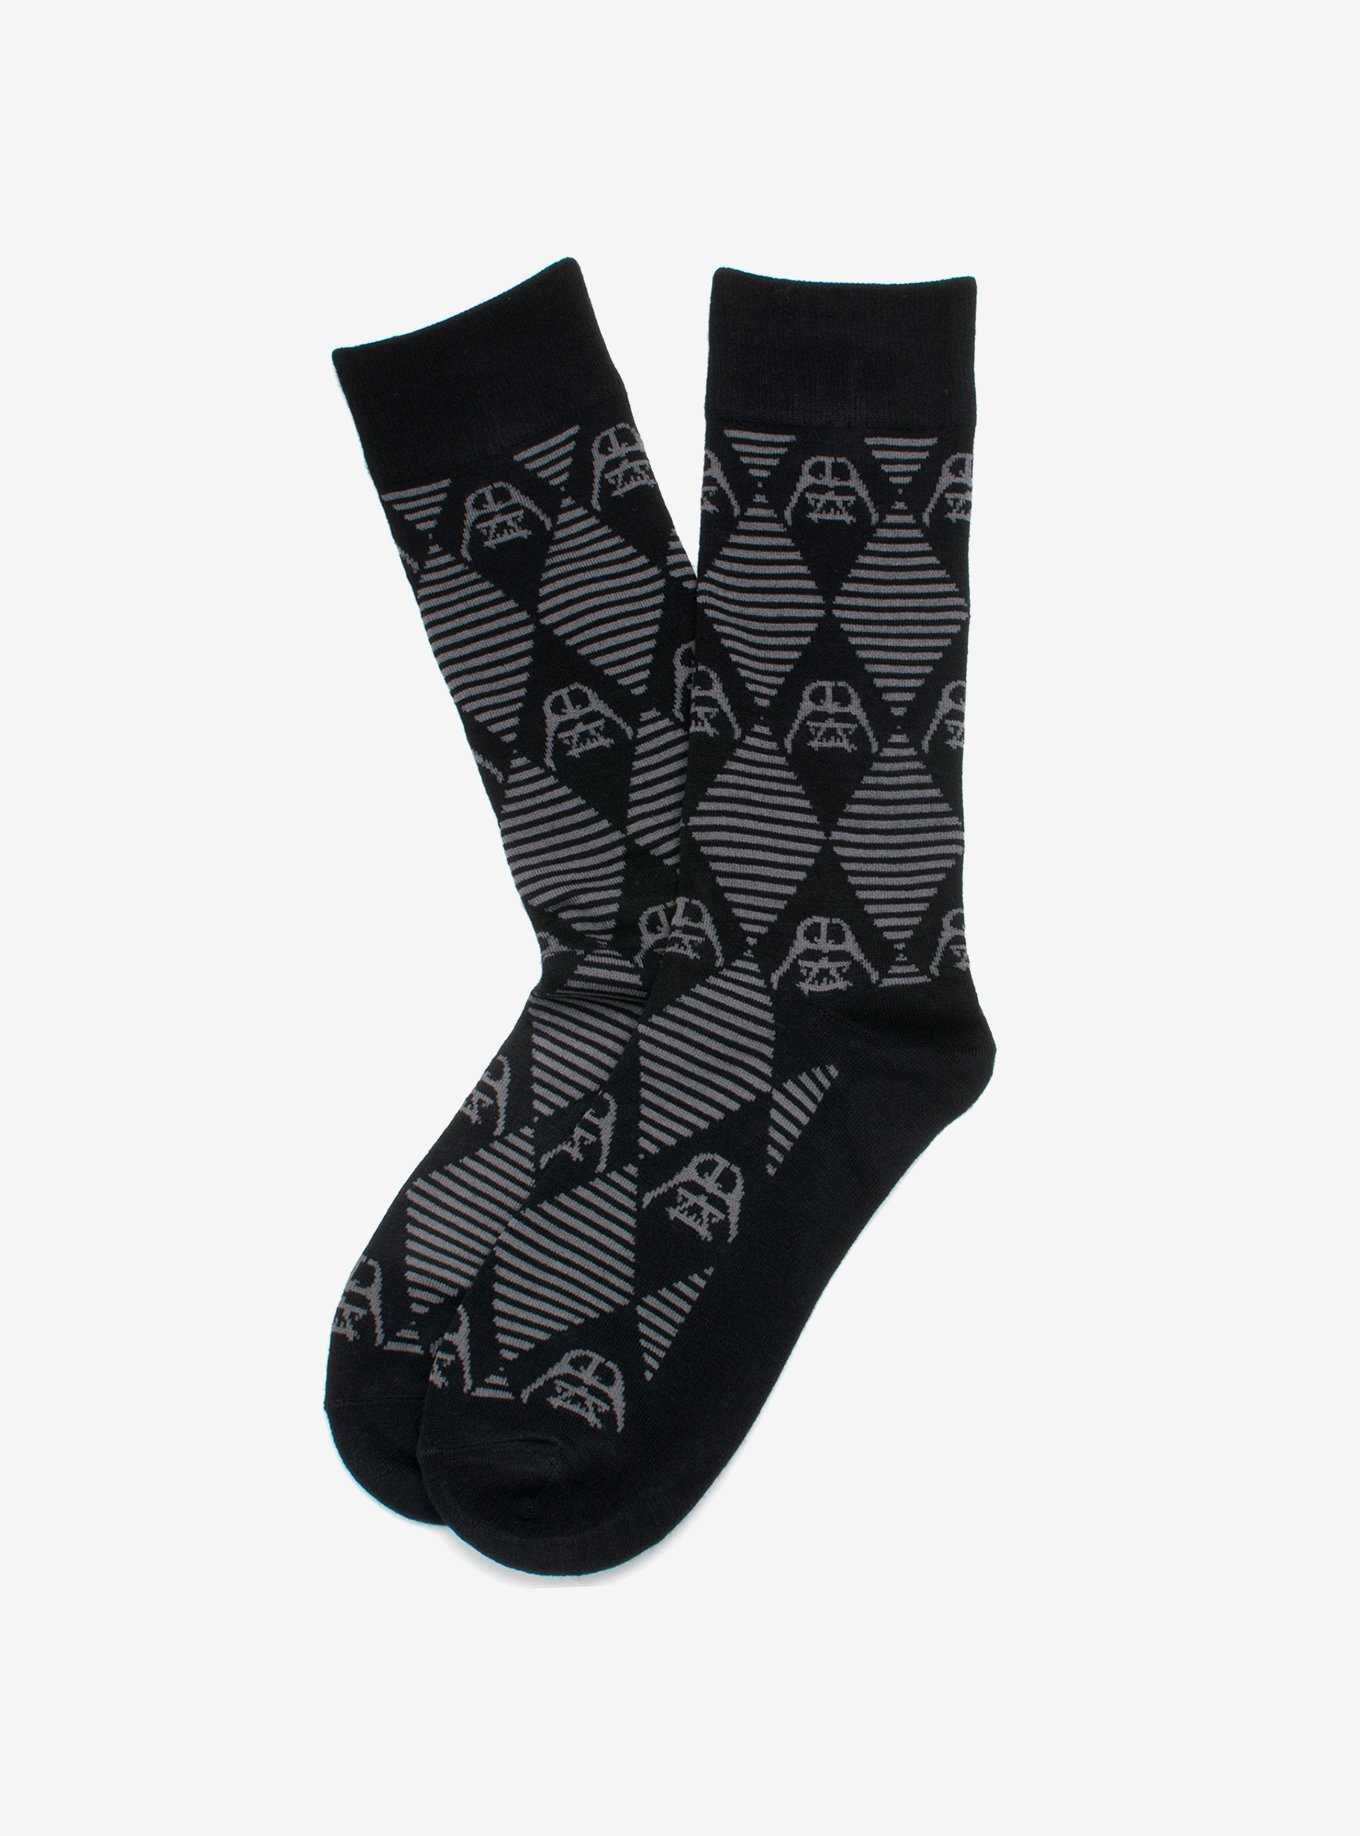 Star Wars Darth Vader Argyle Stripe Black Socks, , hi-res